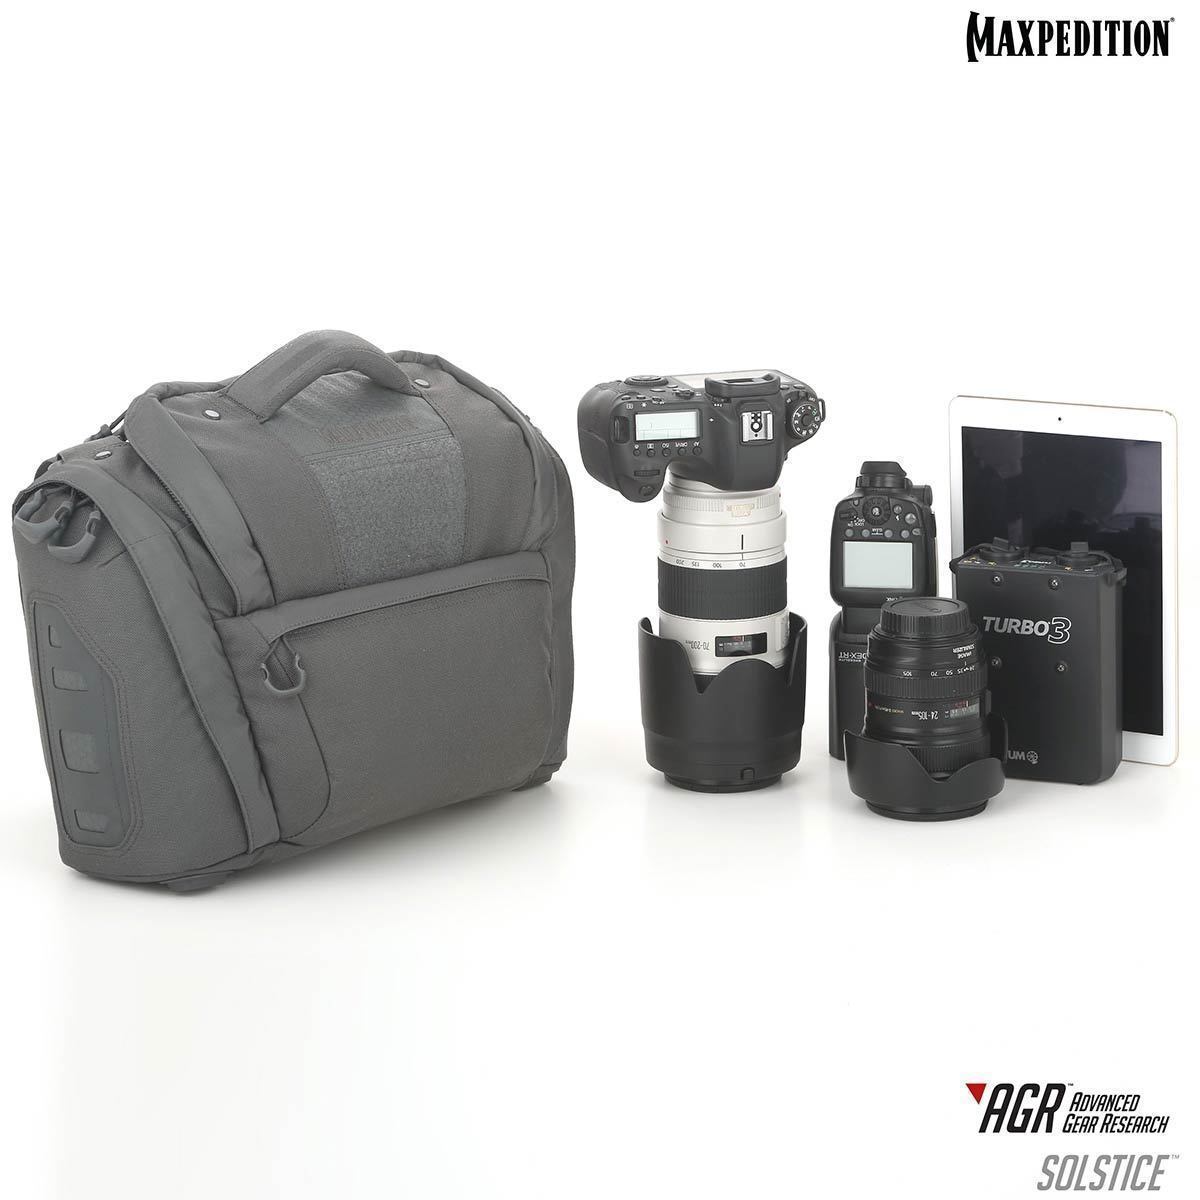 Maxpedition Solstice CCW Camera Bag 13.5L Tactical Distributors Ltd New Zealand